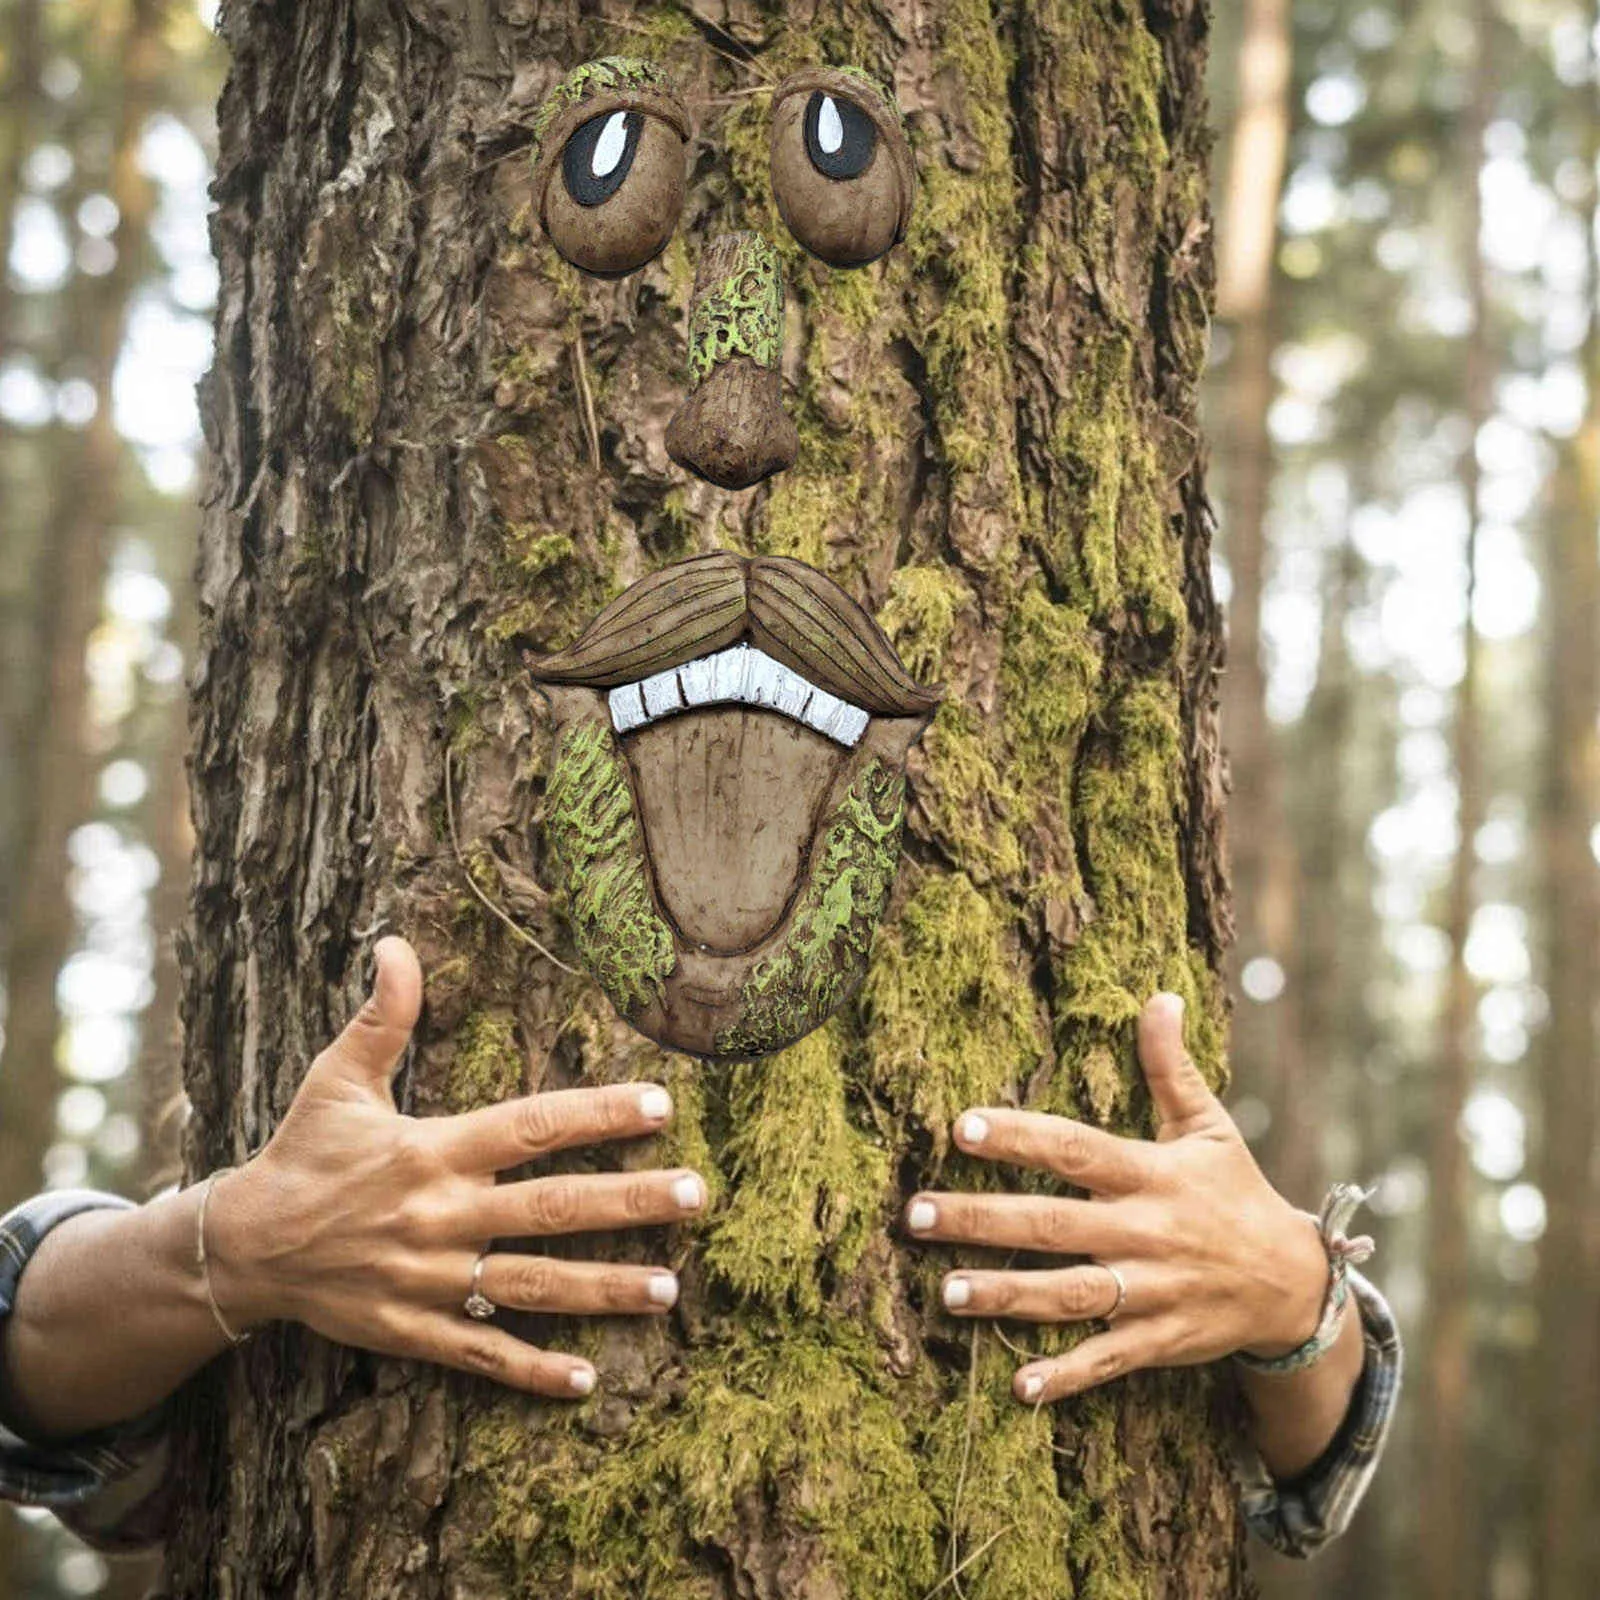 الرجل العجوز شجرة hugger حديقة peeker ساحة الفن في الهواء الطلق شجرة مضحك الرجل العجوز الوجه النحت غريب الأطوار شجرة الوجه حديقة الديكور Y0914